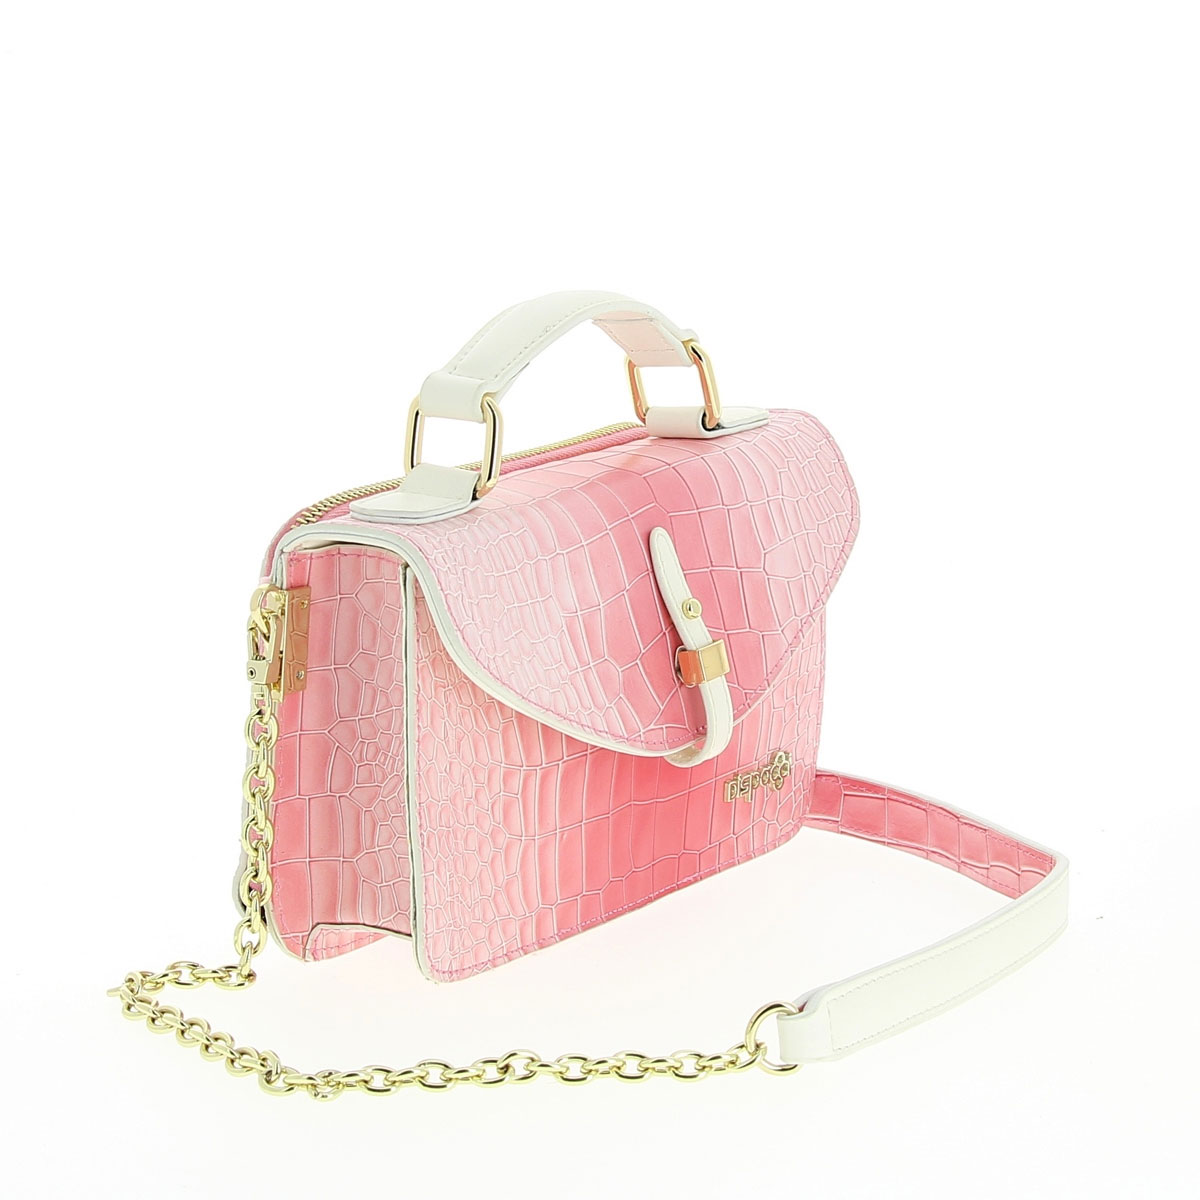 Сумка женская "Dispacci", цвет: розовый. Т3191-1 - купить фирменную сумку по доступной цене с доставкой на дом в интернет магазине OZON.ru